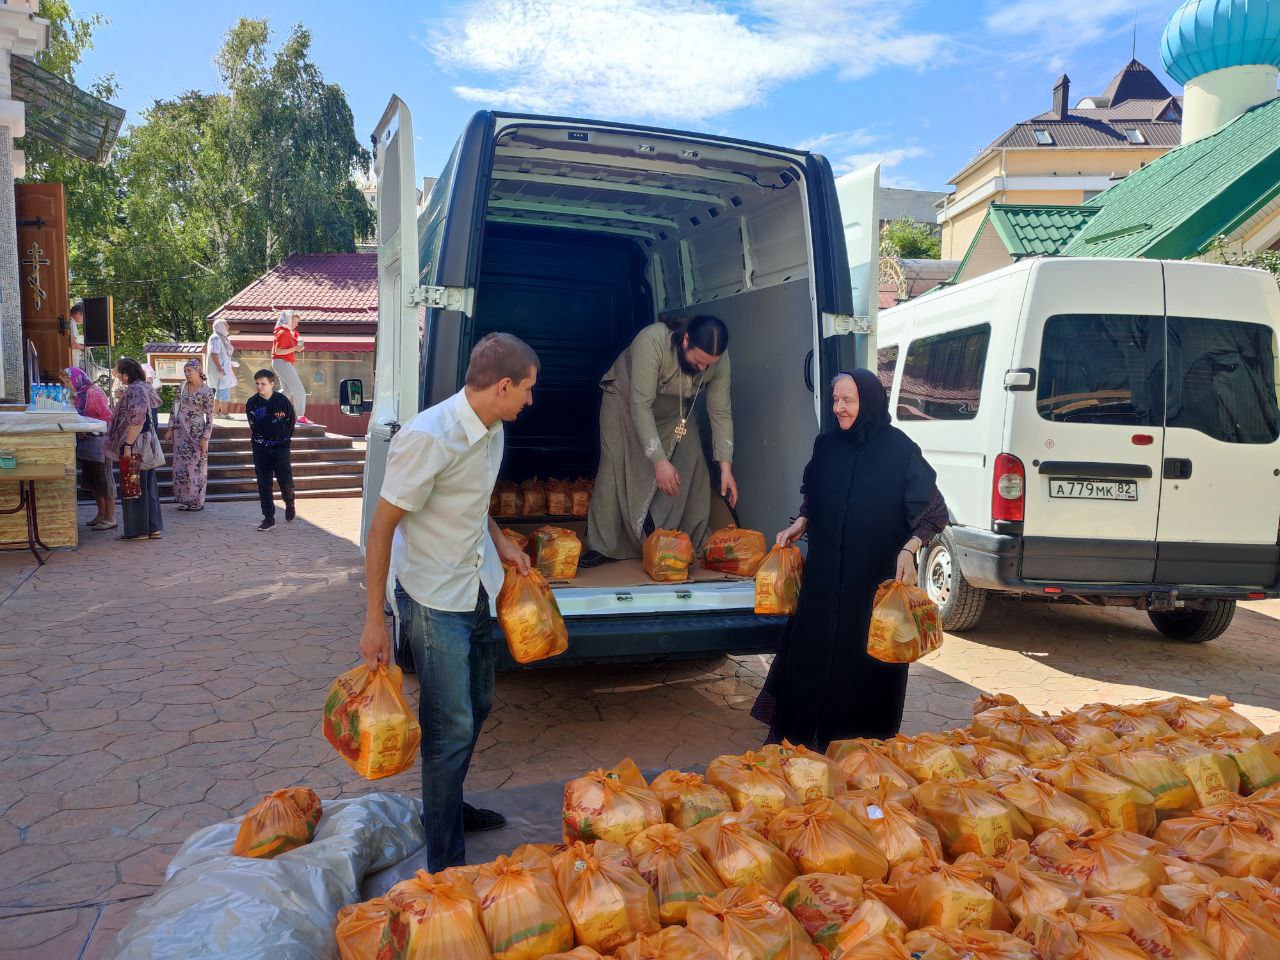 Свято-Троицкий женский монастырь города Симферополя передал 600 продуктовых наборов более чем на 4 тонны для мирных жителей в зоне конфликта